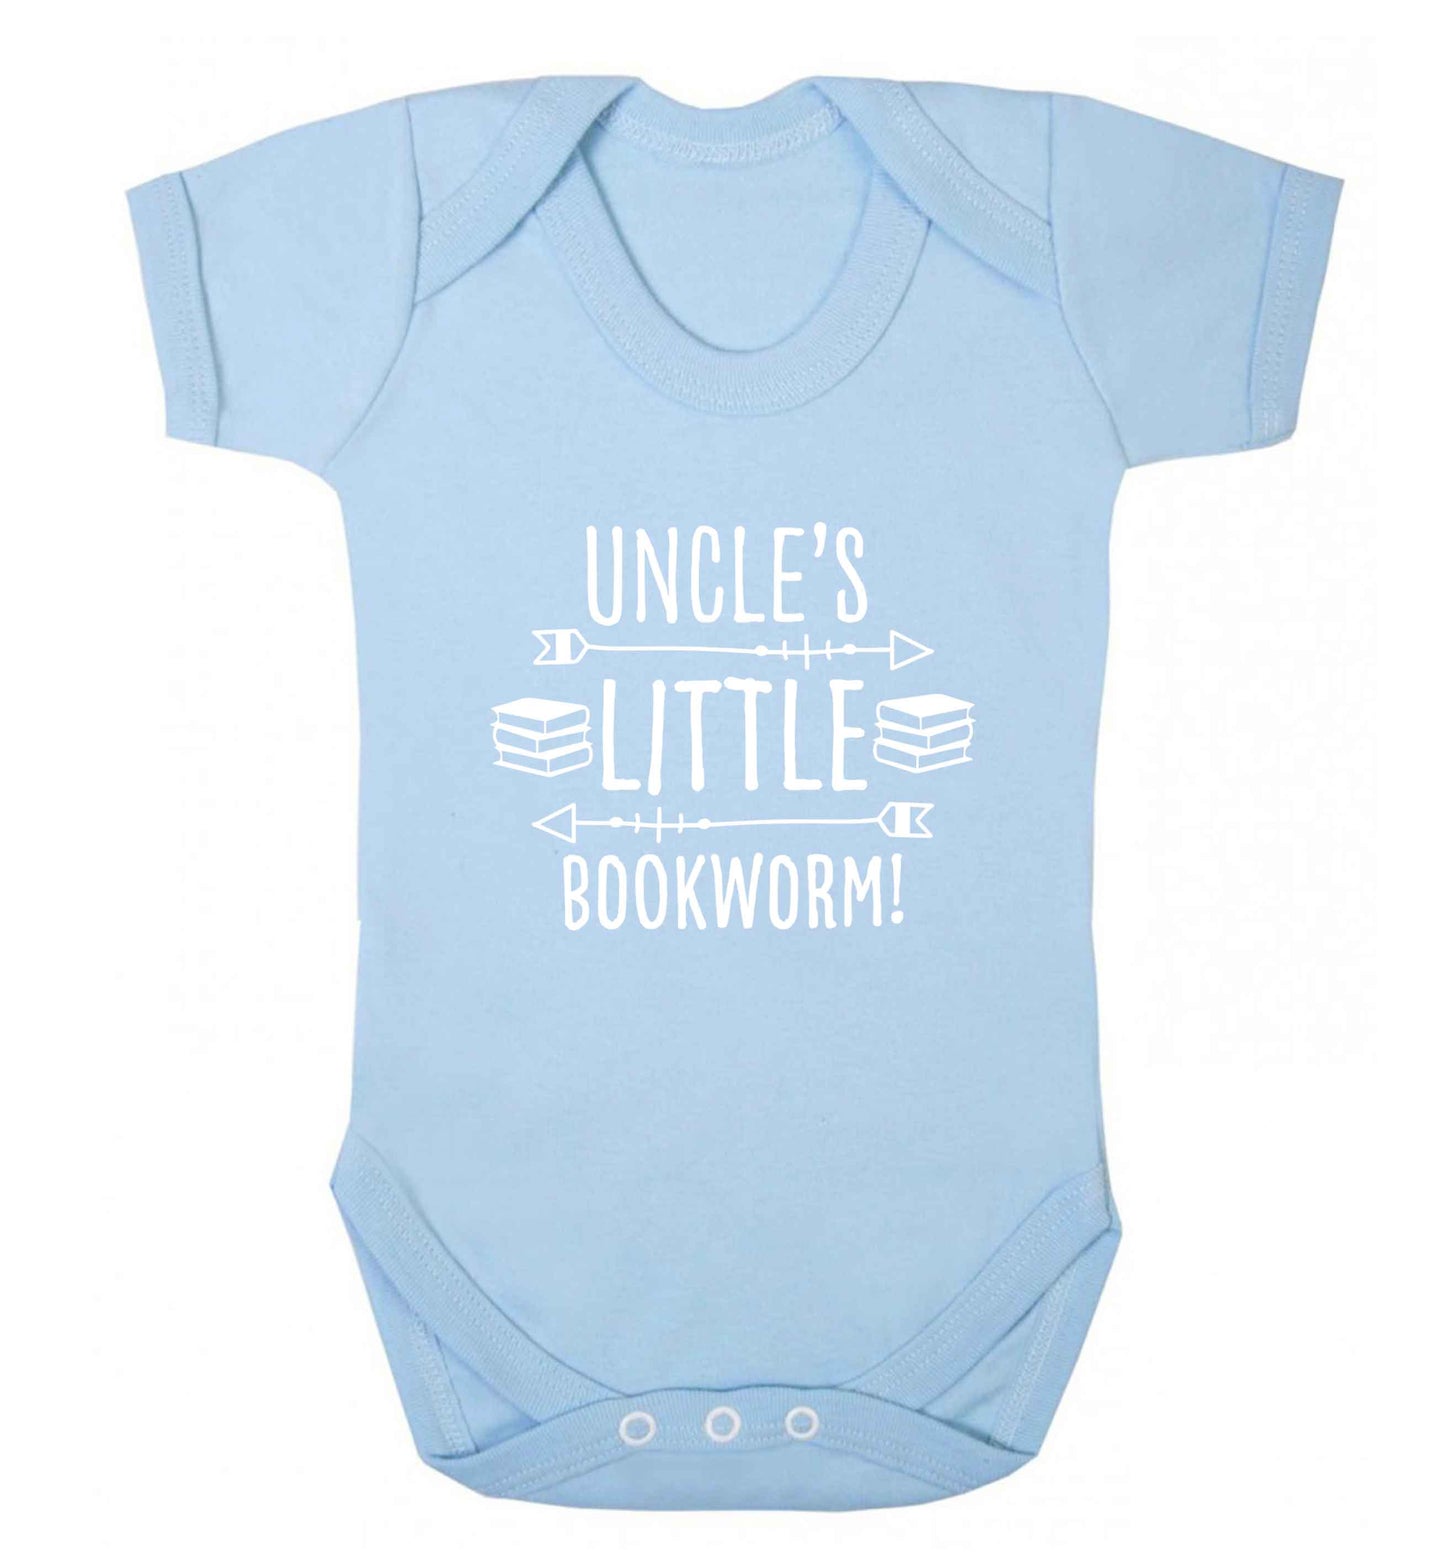 Uncle's little bookworm baby vest pale blue 18-24 months